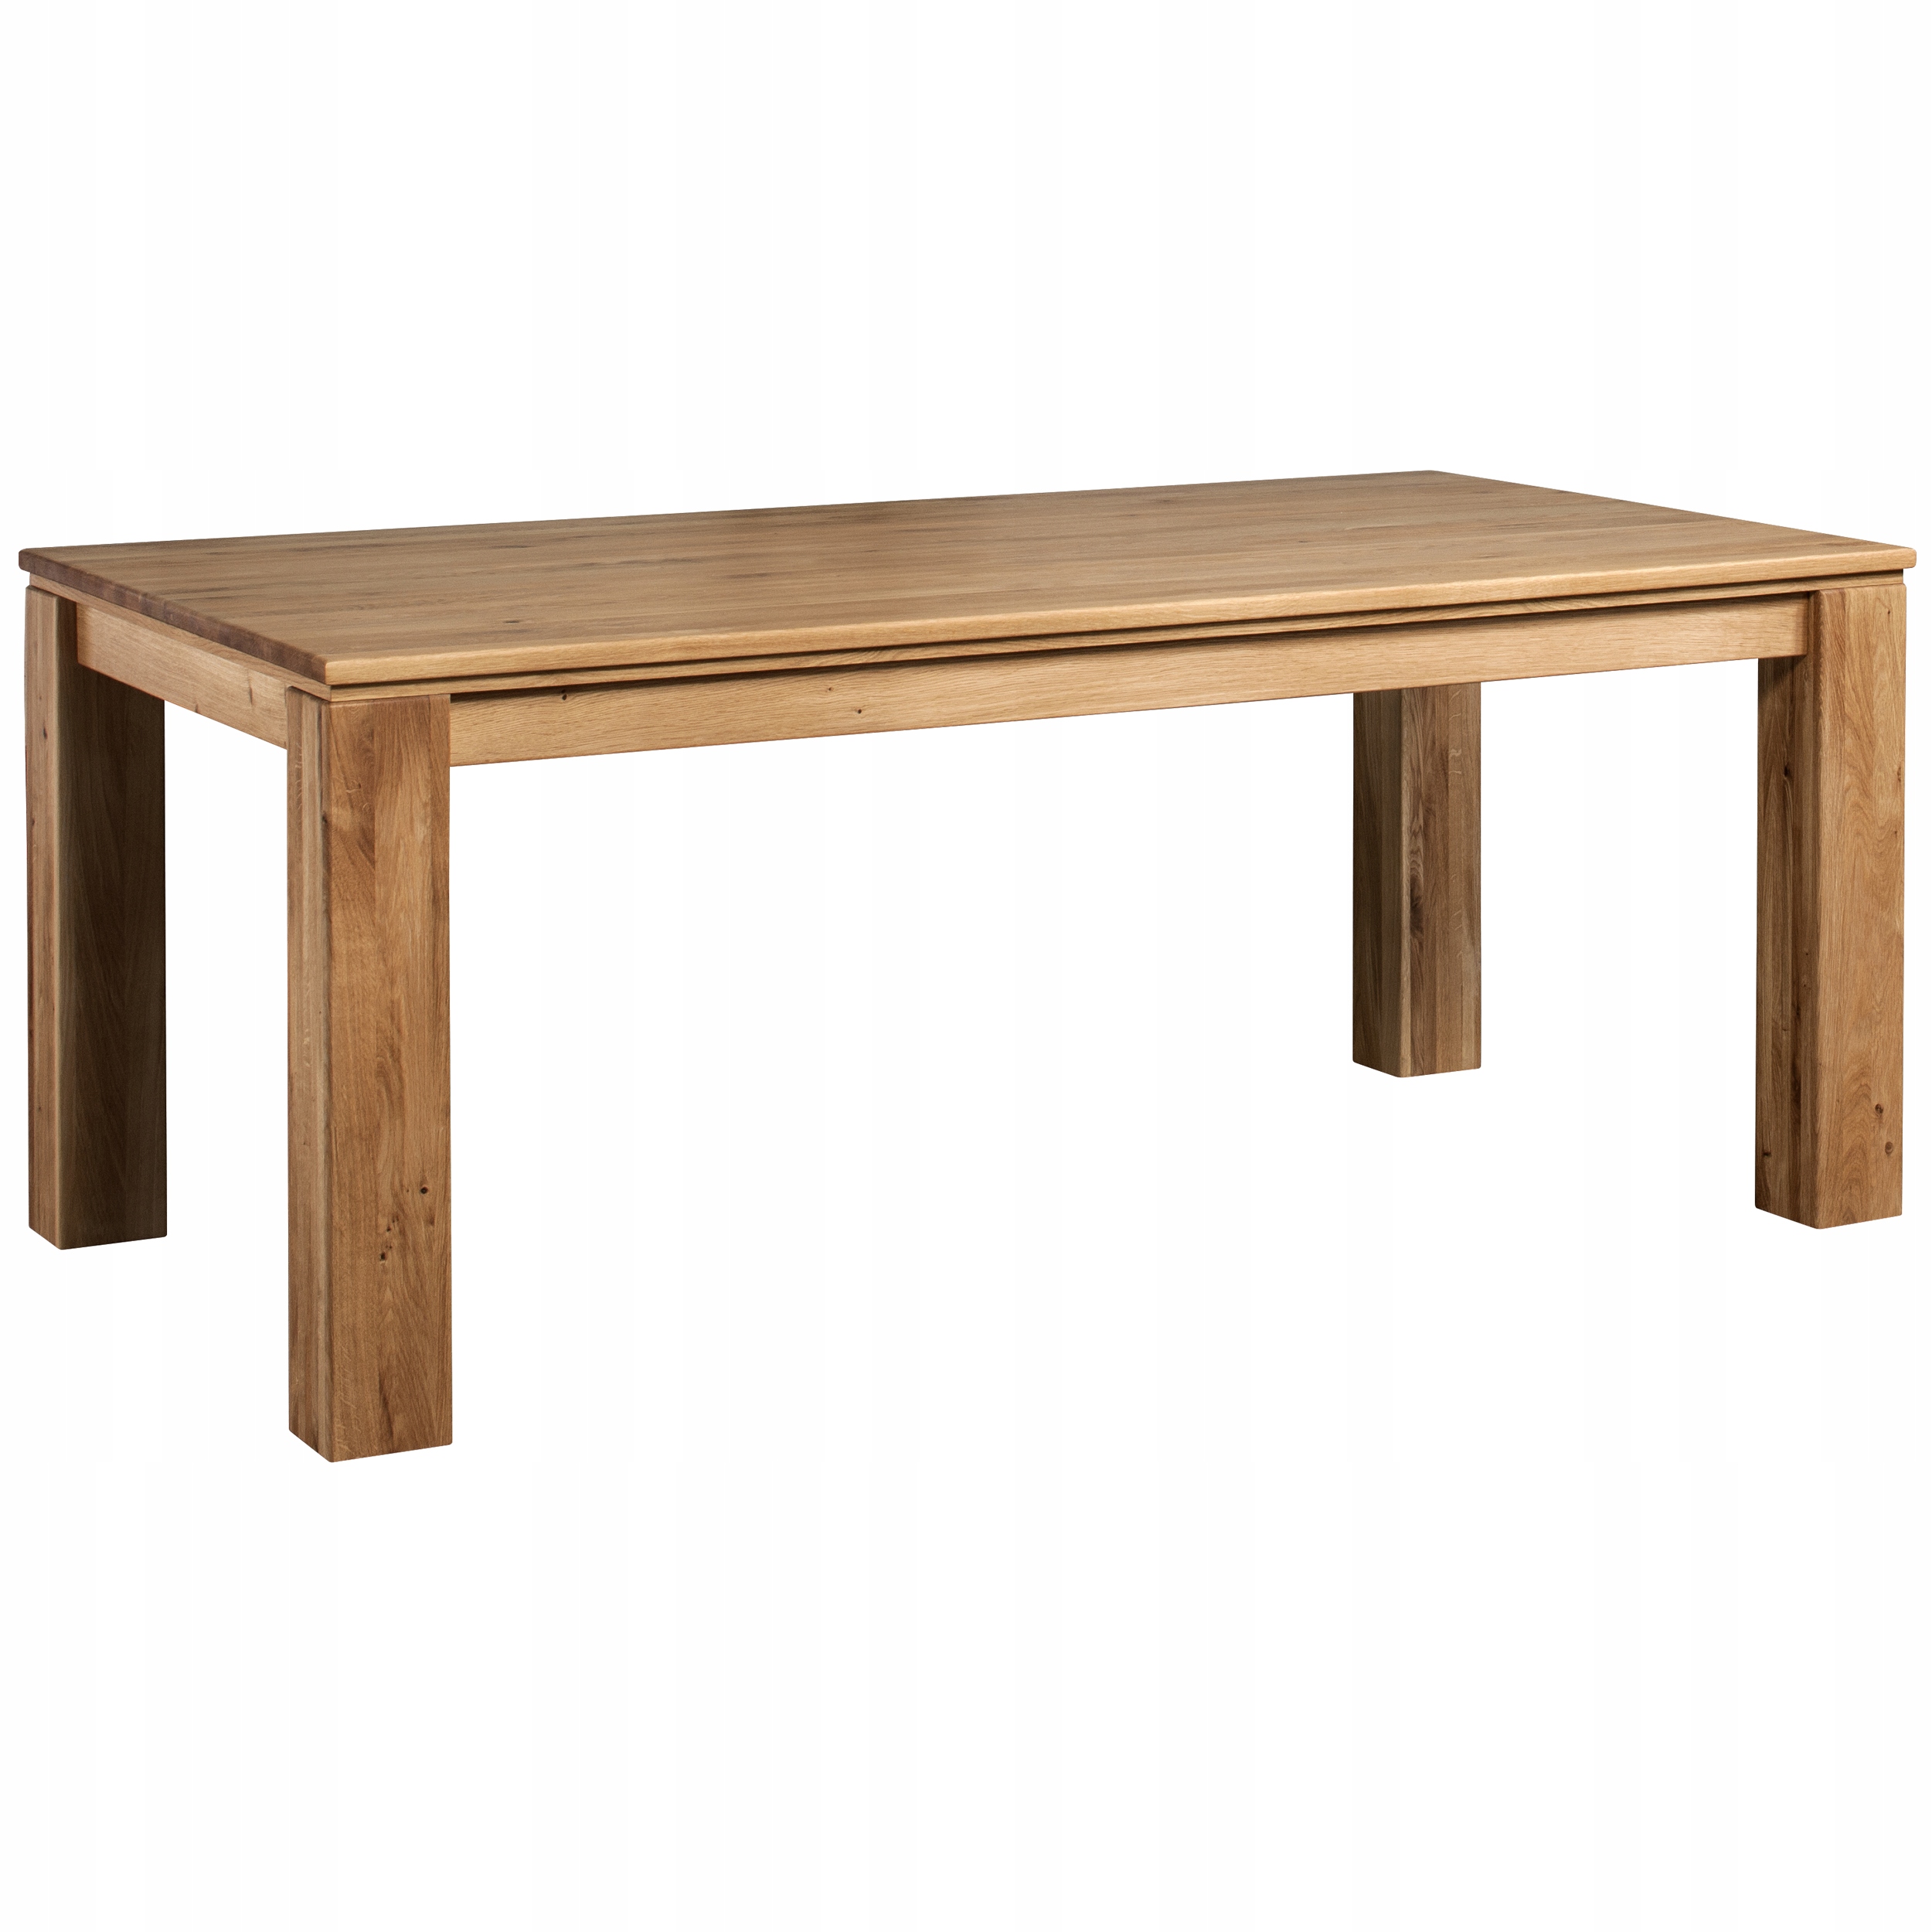 Praktyczny Duży Drewniany Stół do Jadalni Dąb (WMKM-F61) • Cena, Opinie •  Stoliki i ławy 14759416693 • Allegro